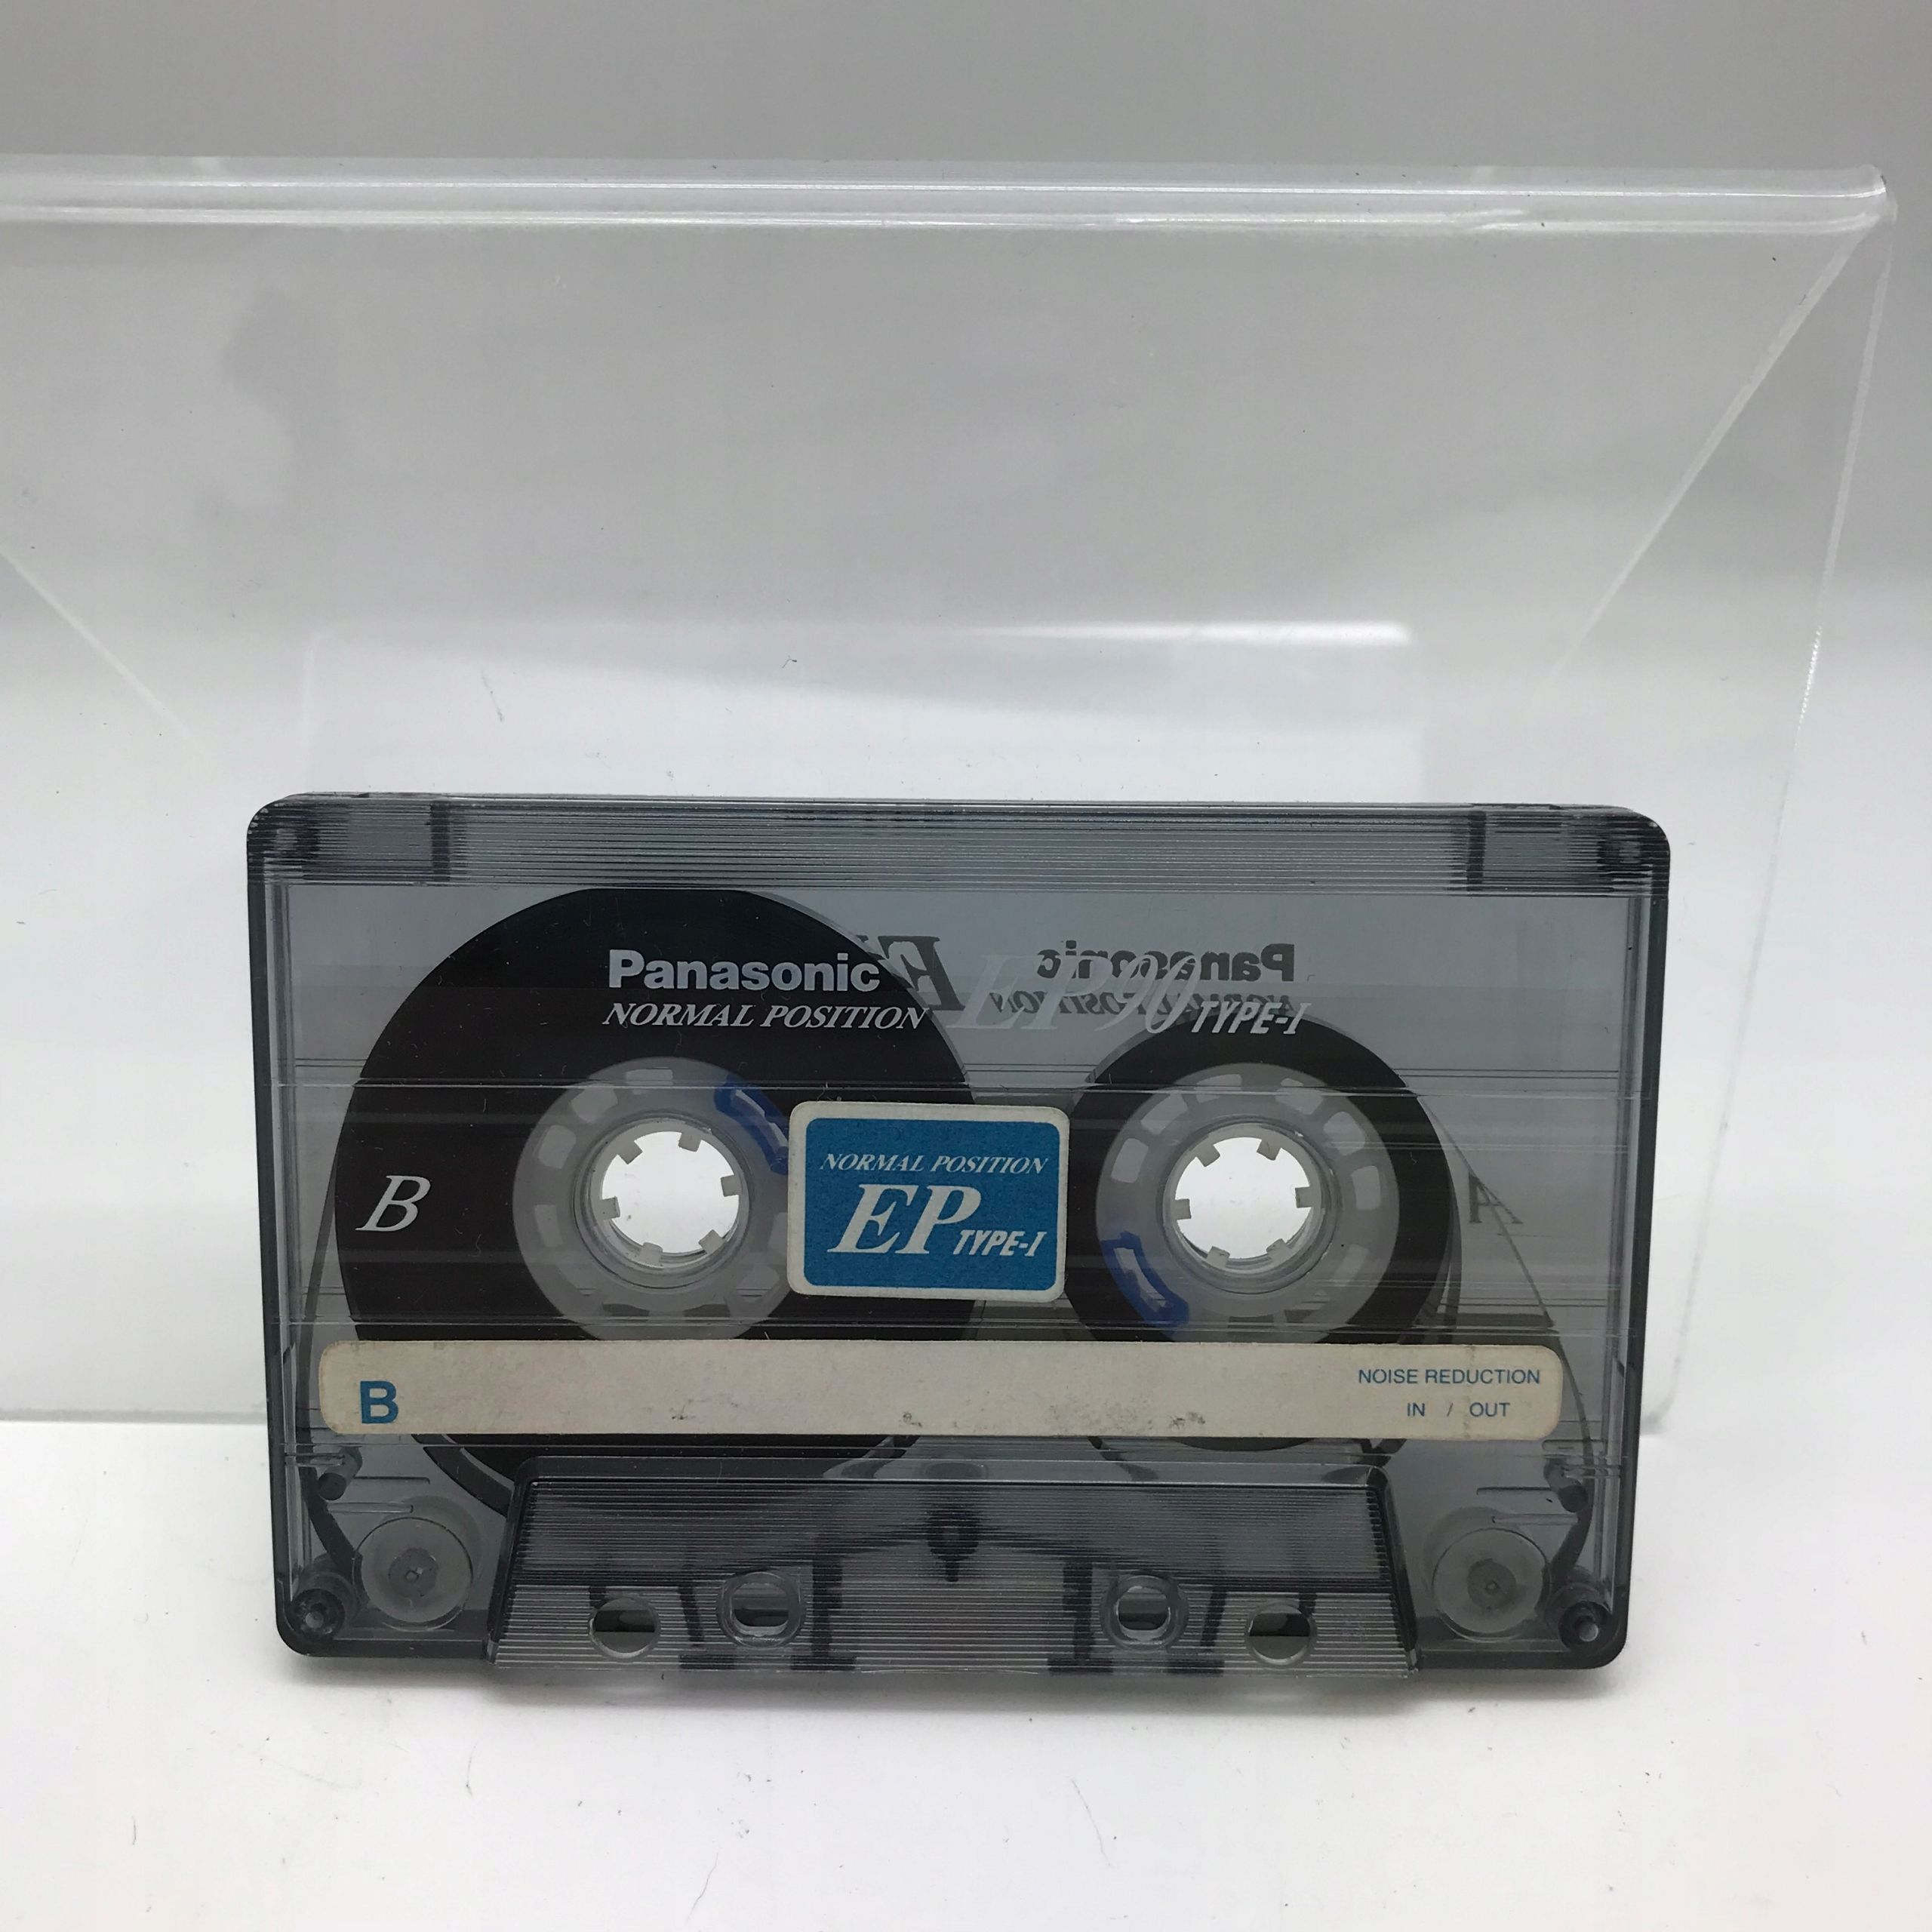 Kaseta - Kaseta magnetofonowa Panasonic Ep 90 I